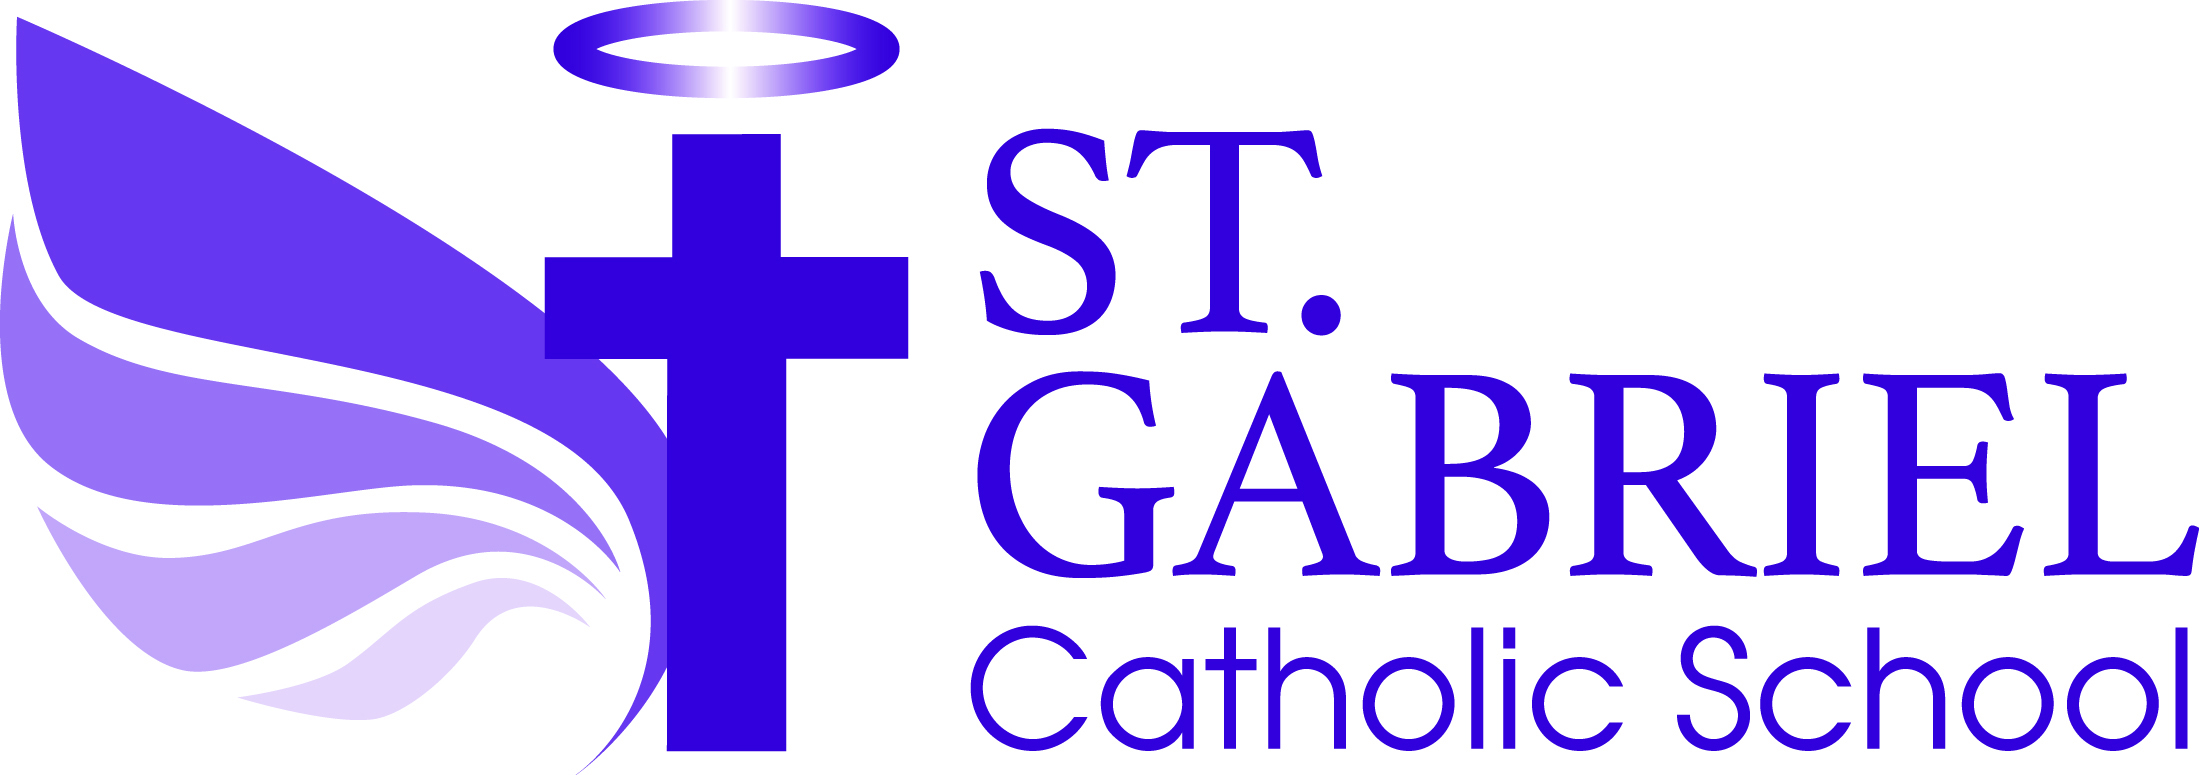 St-Gabriel Catholic school